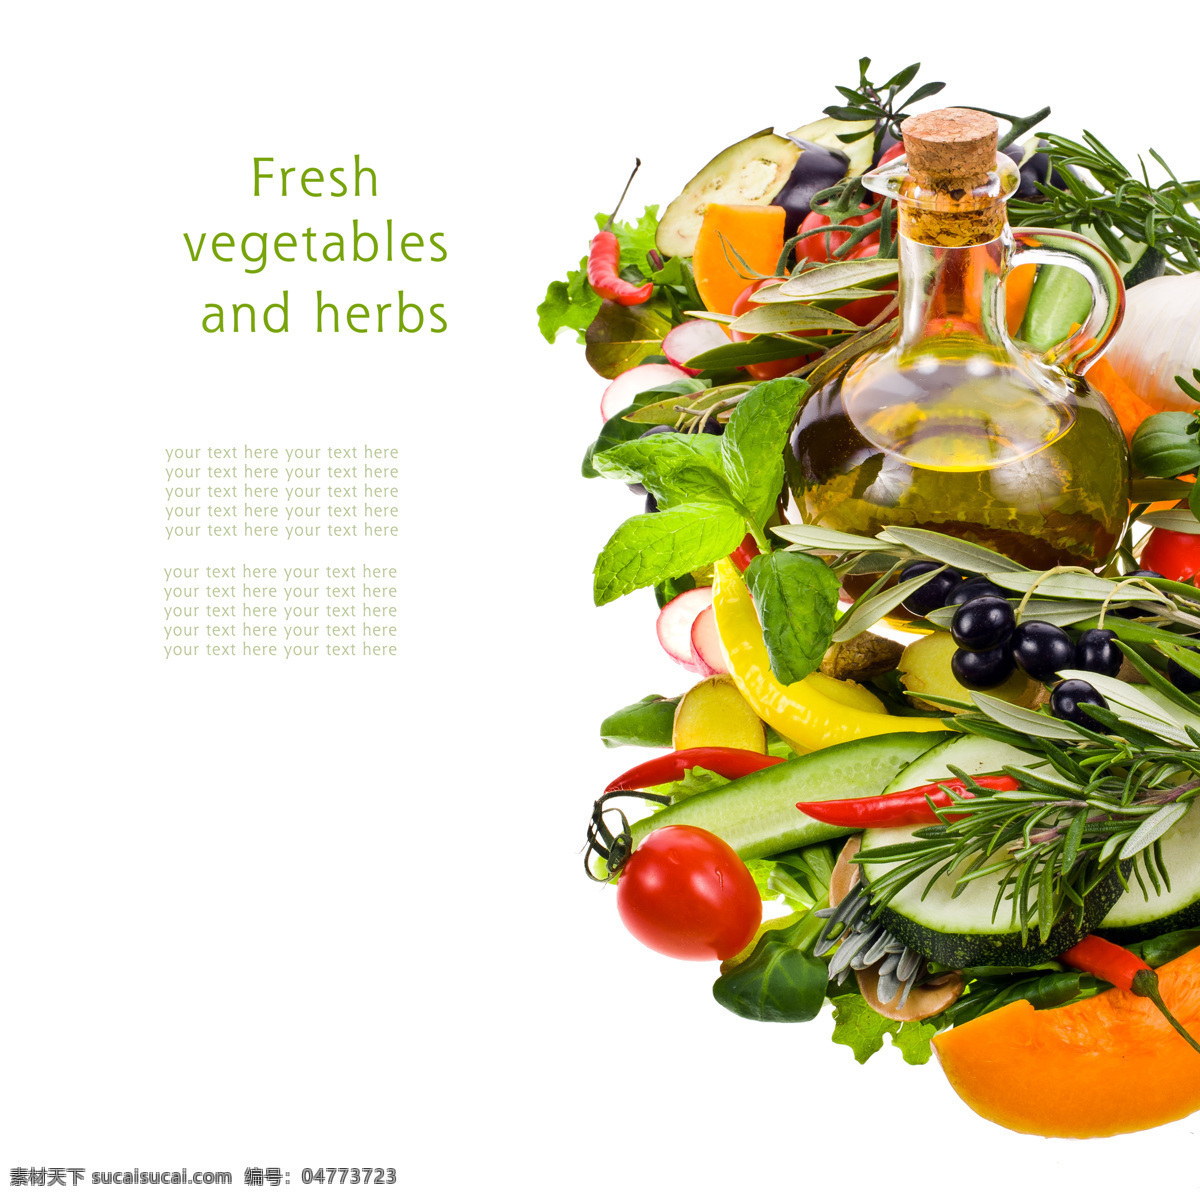 食用油与蔬菜 食用油 橄榄 色拉油 番茄 西红柿 新鲜蔬菜 蔬菜摄影 黄瓜 水果蔬菜 餐饮美食 白色